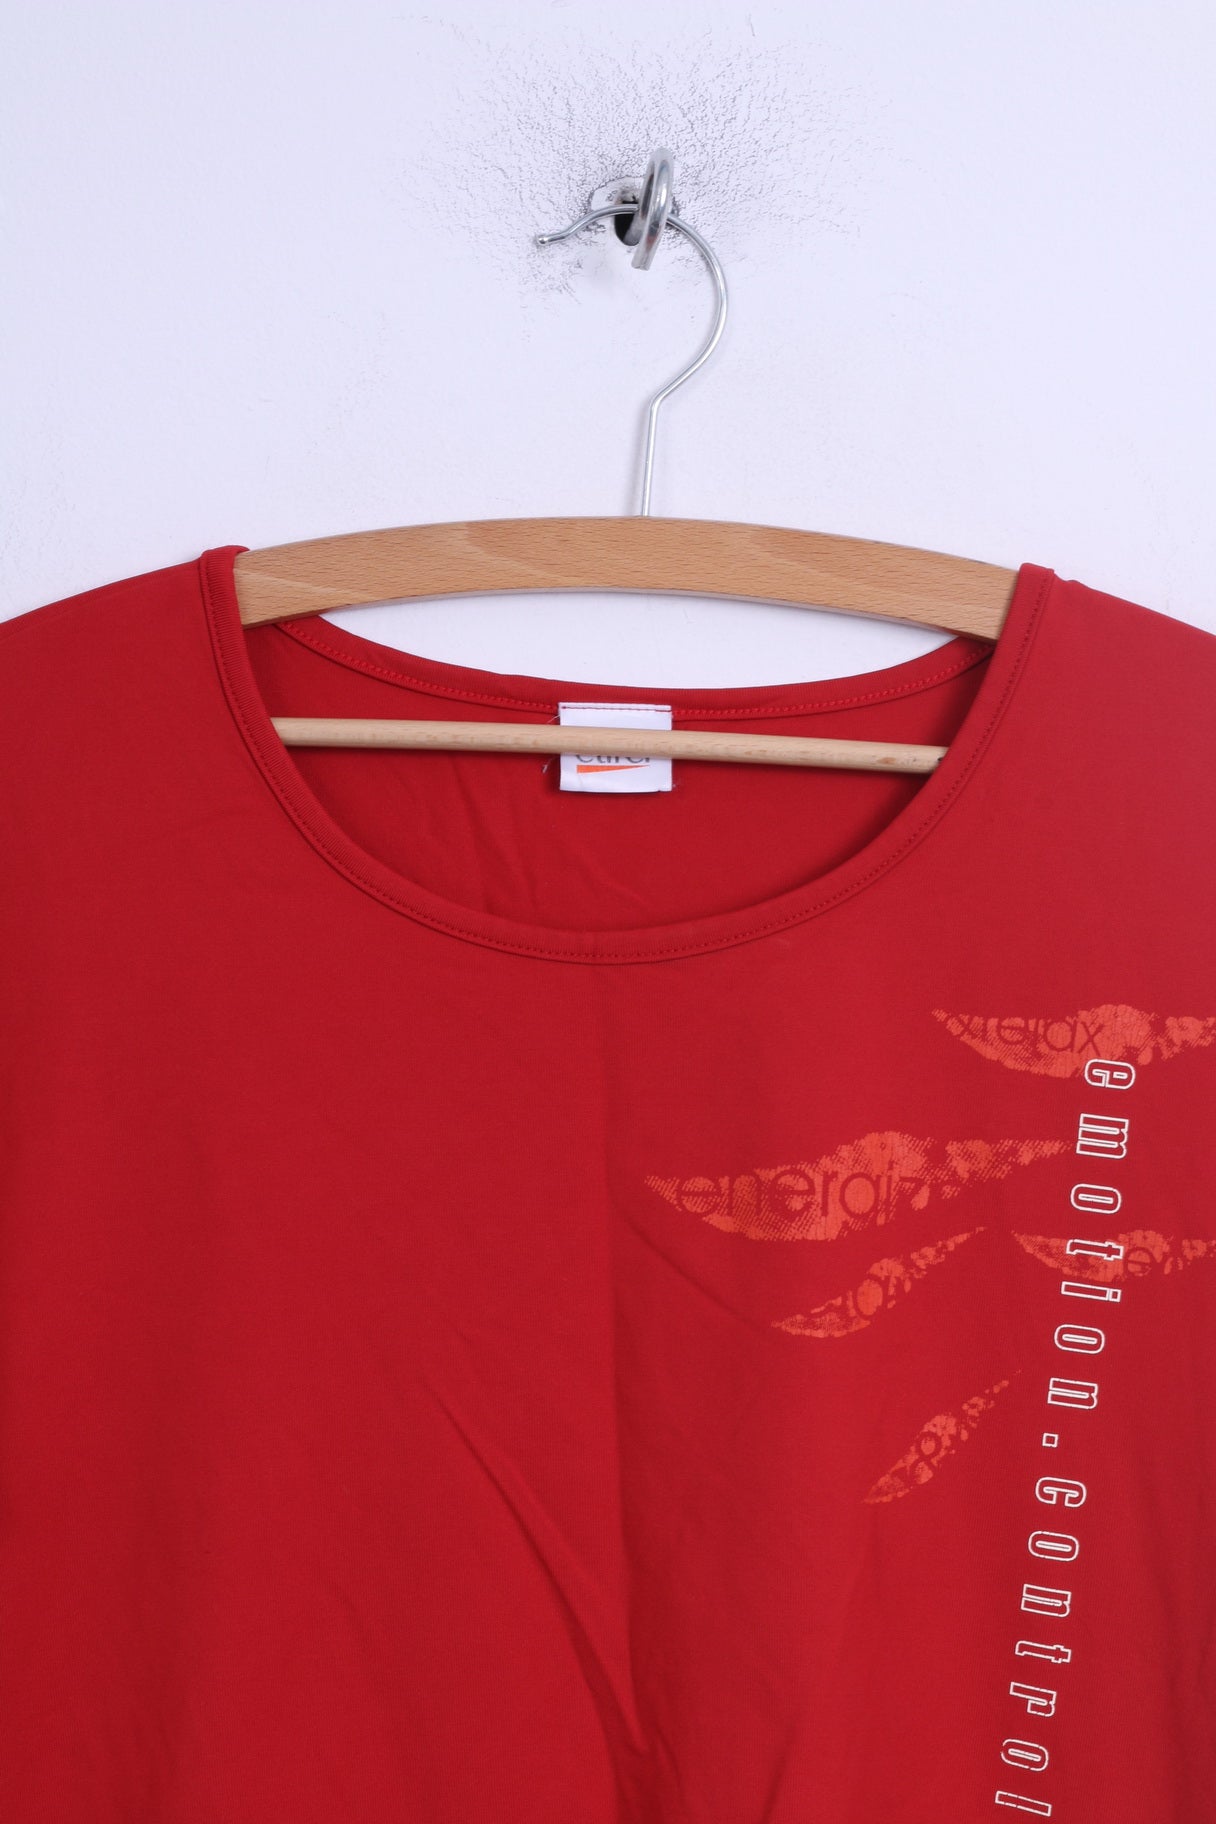 Maglia da donna Etirel M rossa elasticizzata per il controllo delle emozioni, maglietta sportiva da allenamento